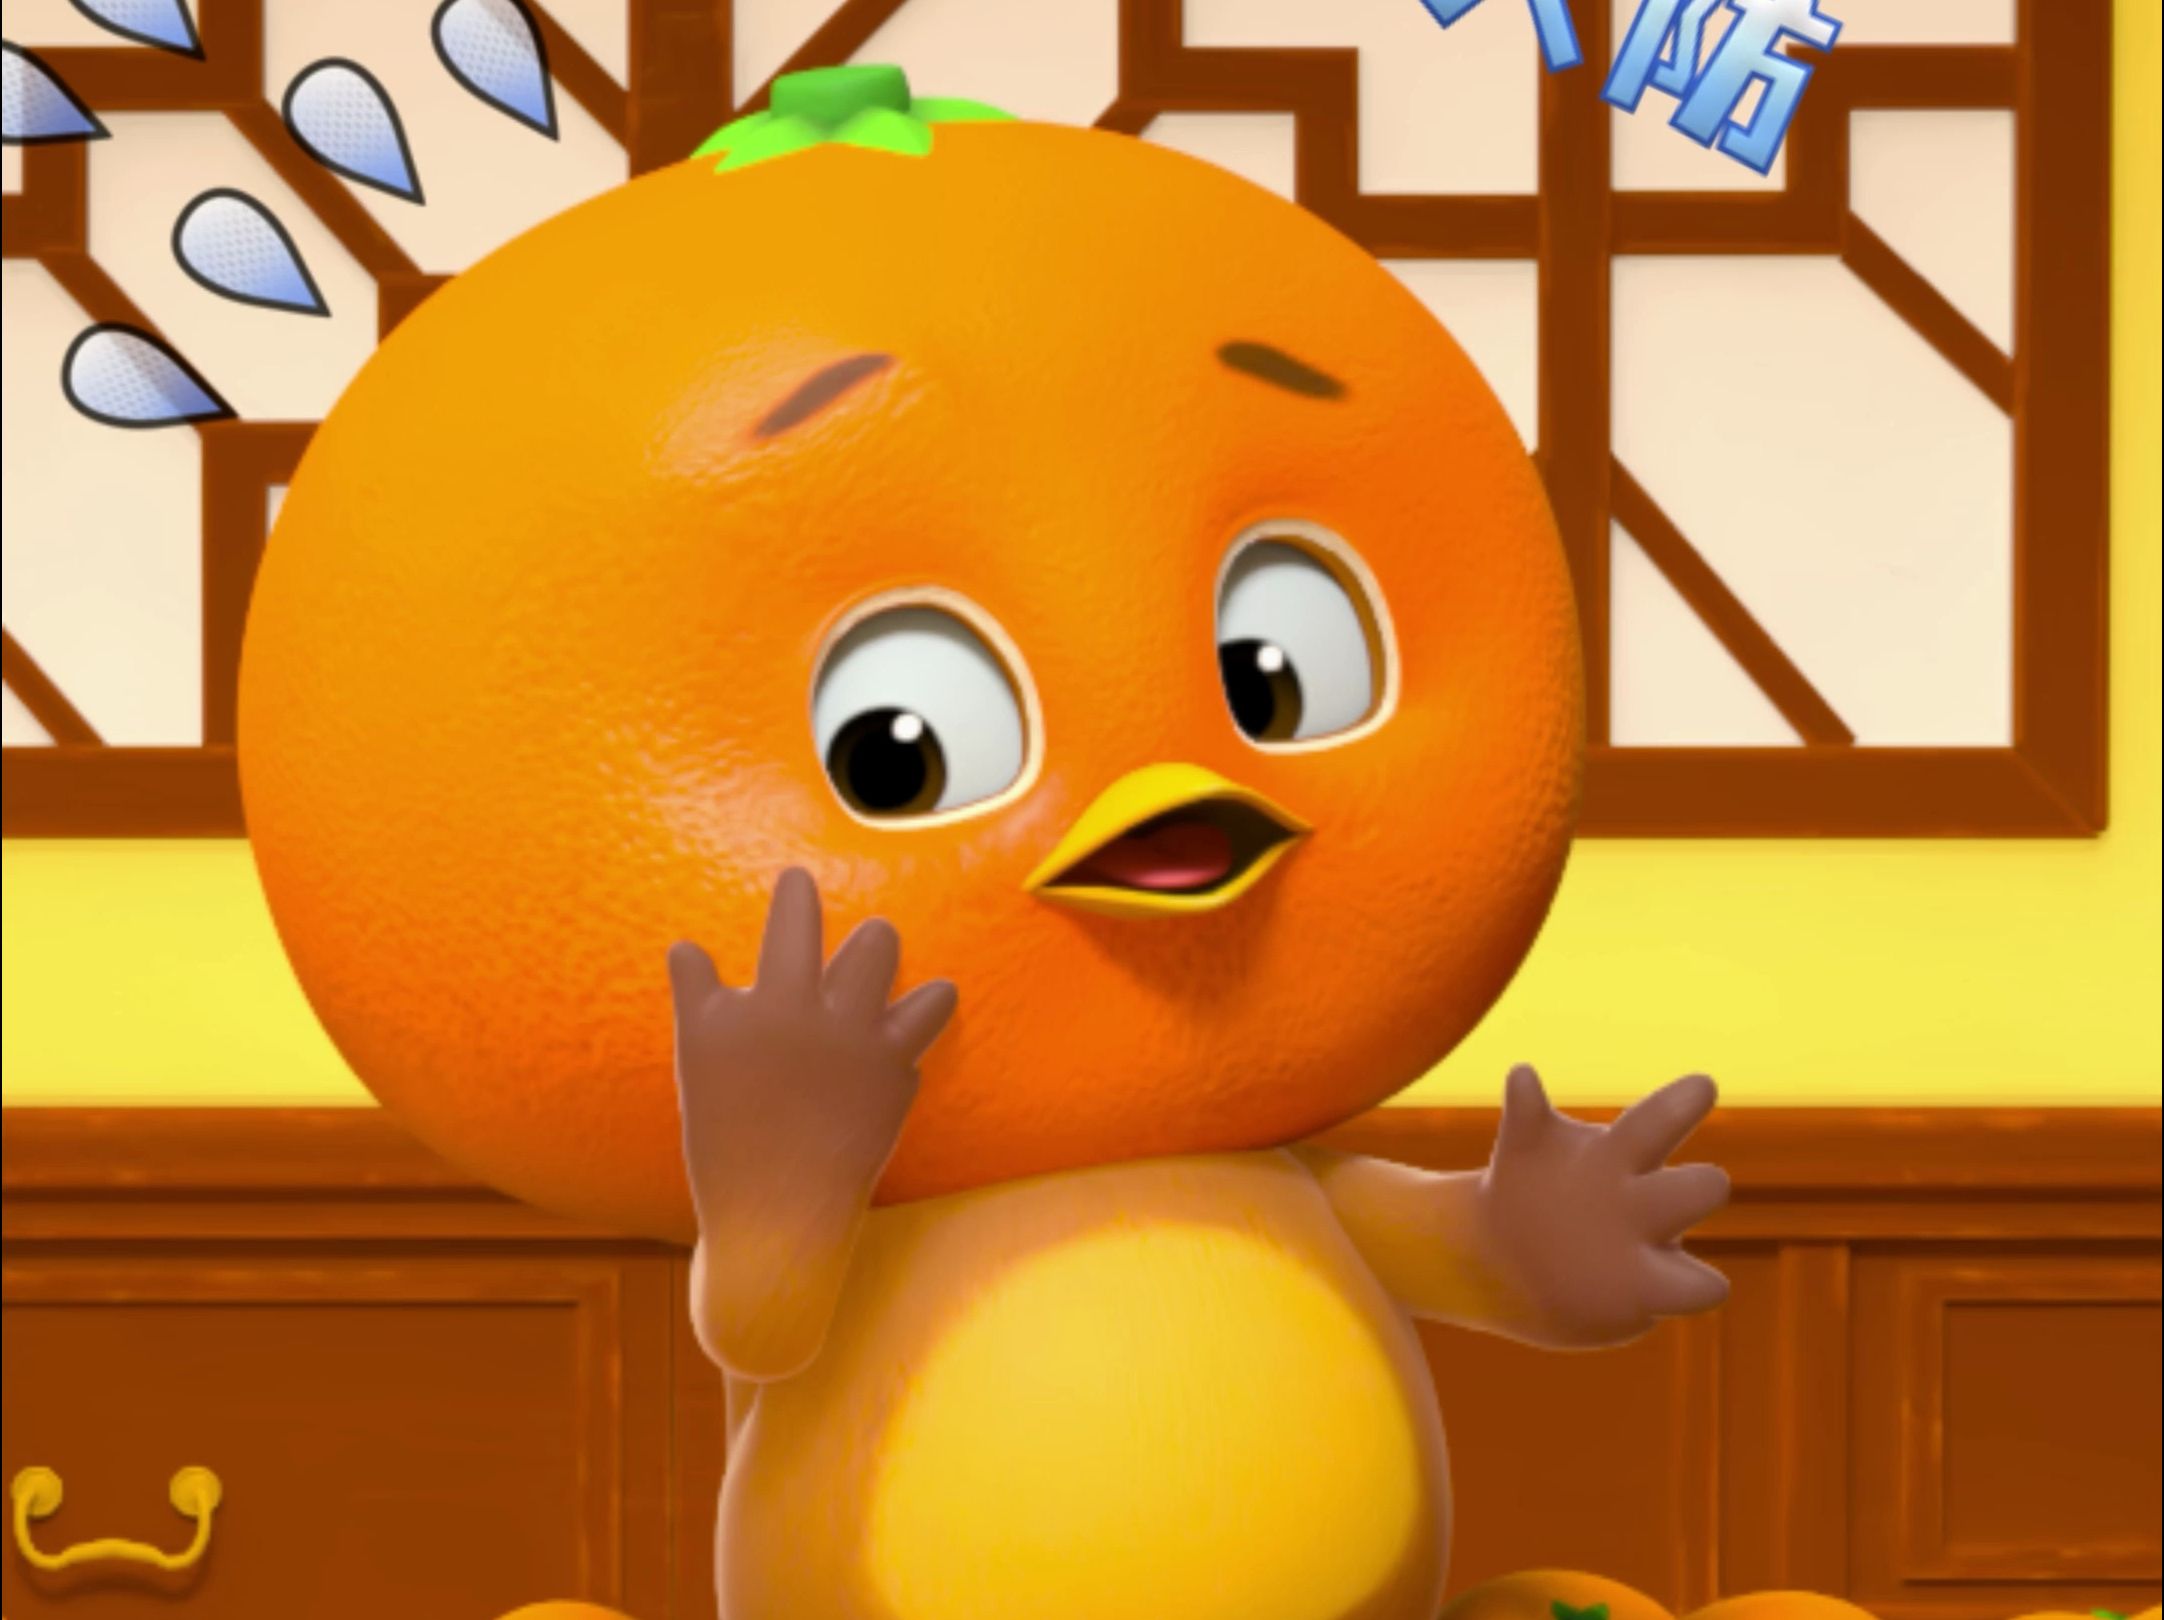 糟糕糟糕oh my god！我脸怎么变黄啦！！你们吃橘子也有变小黄人的经历吗？